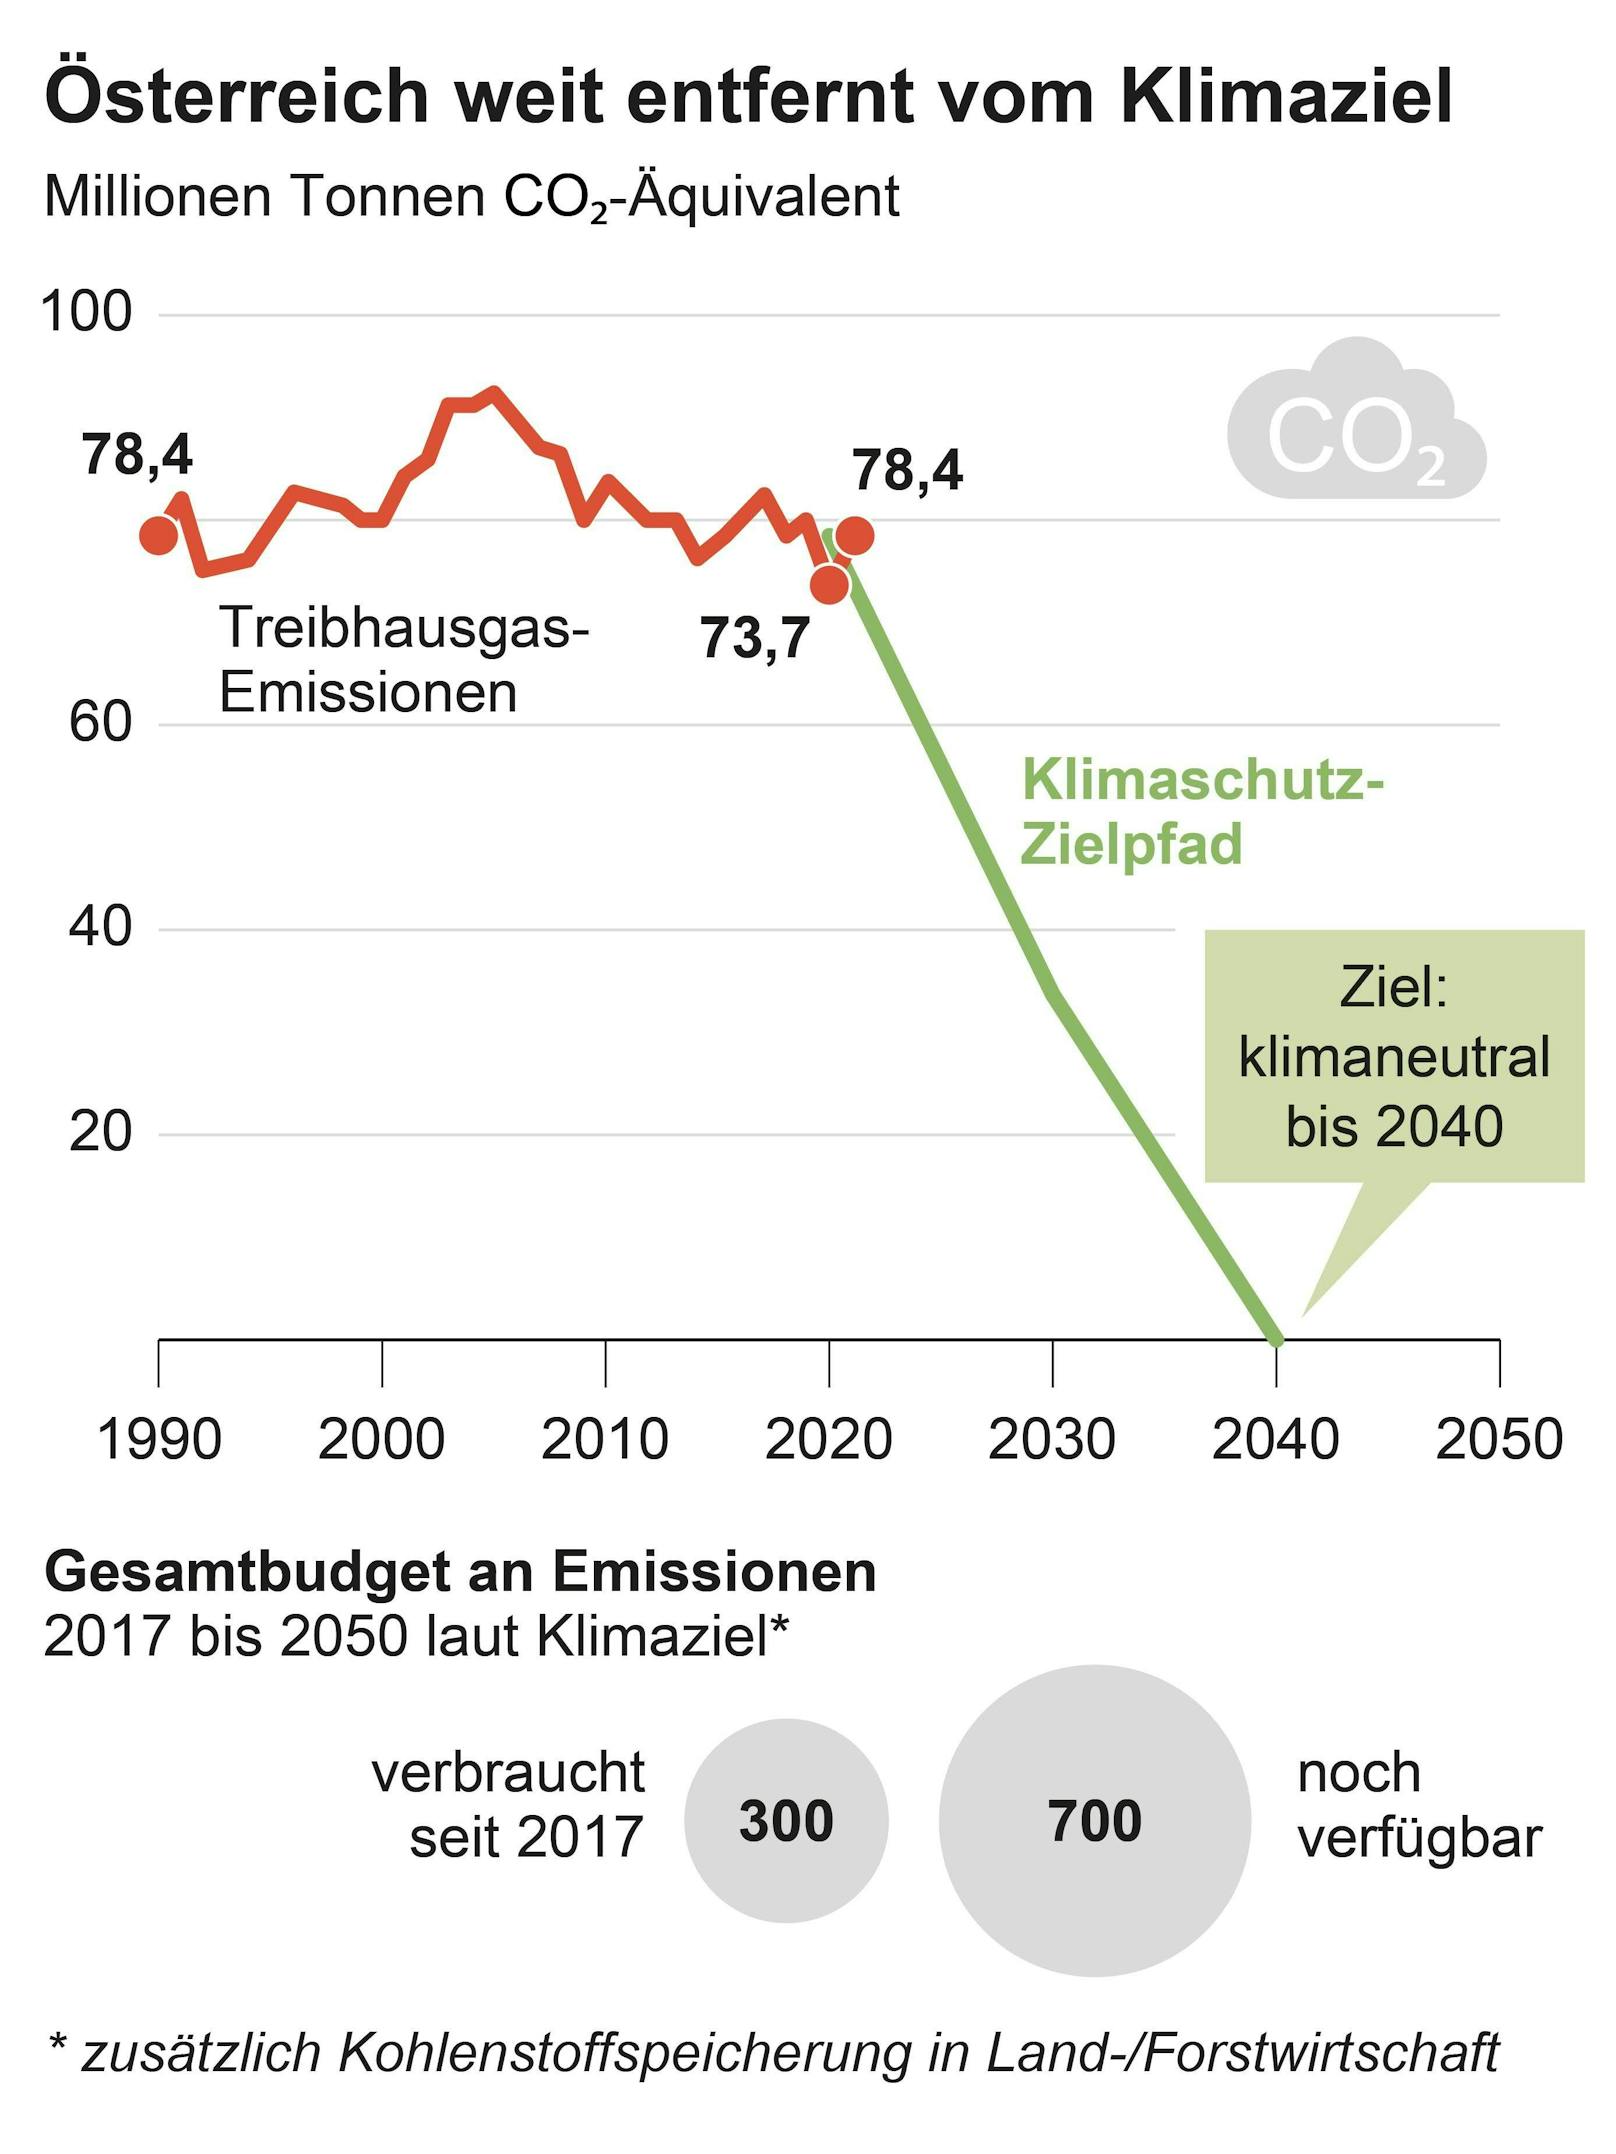 Schon jetzt zeichnet sich ab, dass Österreich sein Klimaziel für 2030 gravierend verfehlen wird.